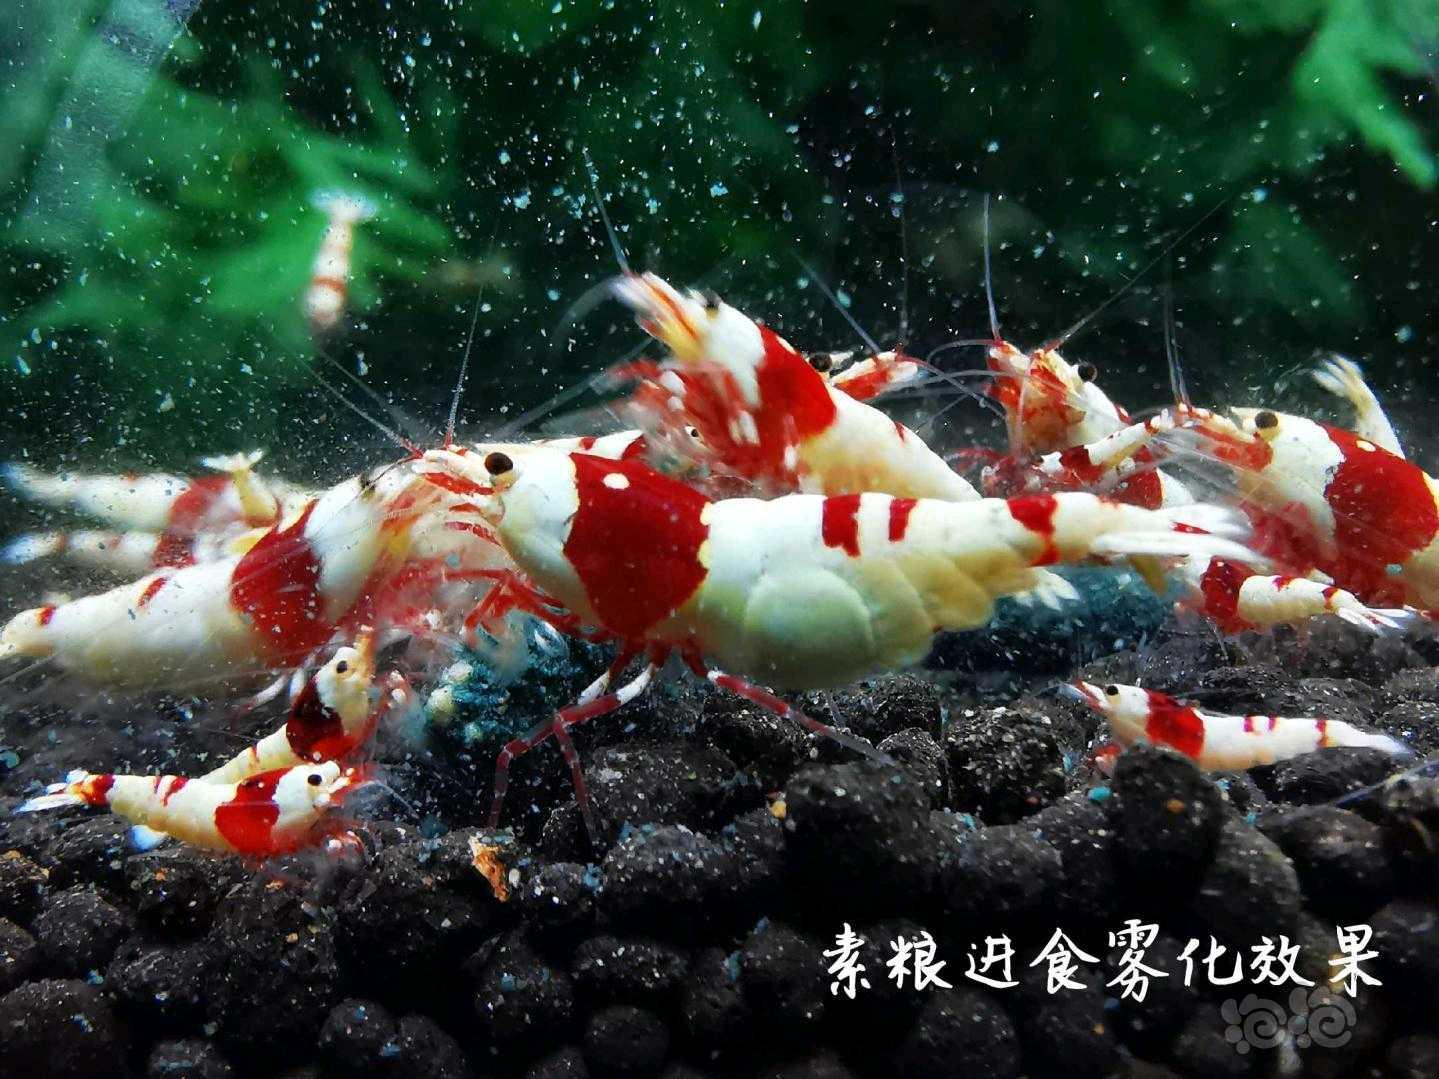 【用品】2021-04-26#RMB拍卖瑾福水晶虾饲料一套-图6